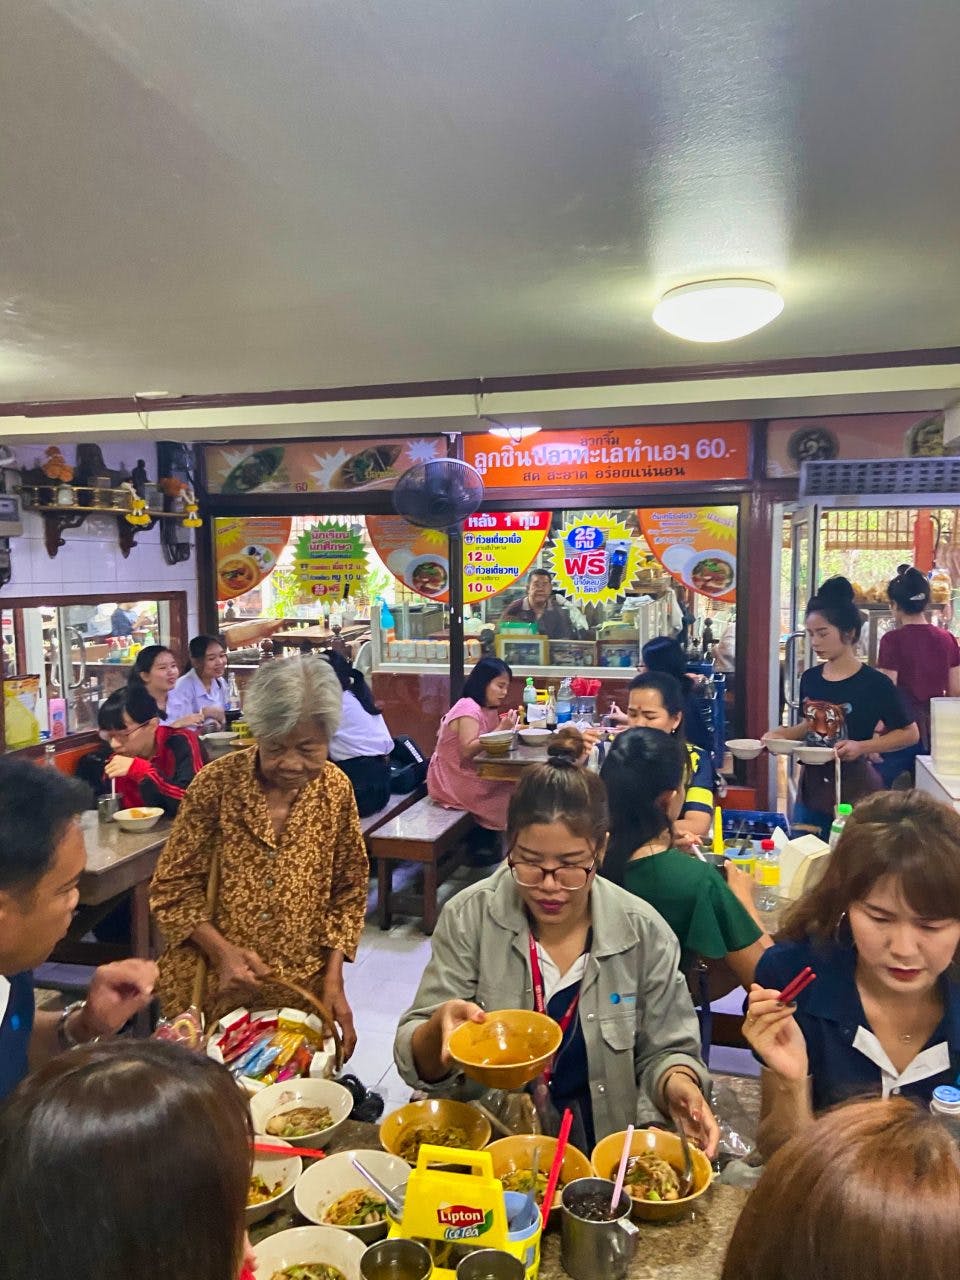 wnętrze lokalnej restauracji z lokalnym jedzeniem w Bangkoku 